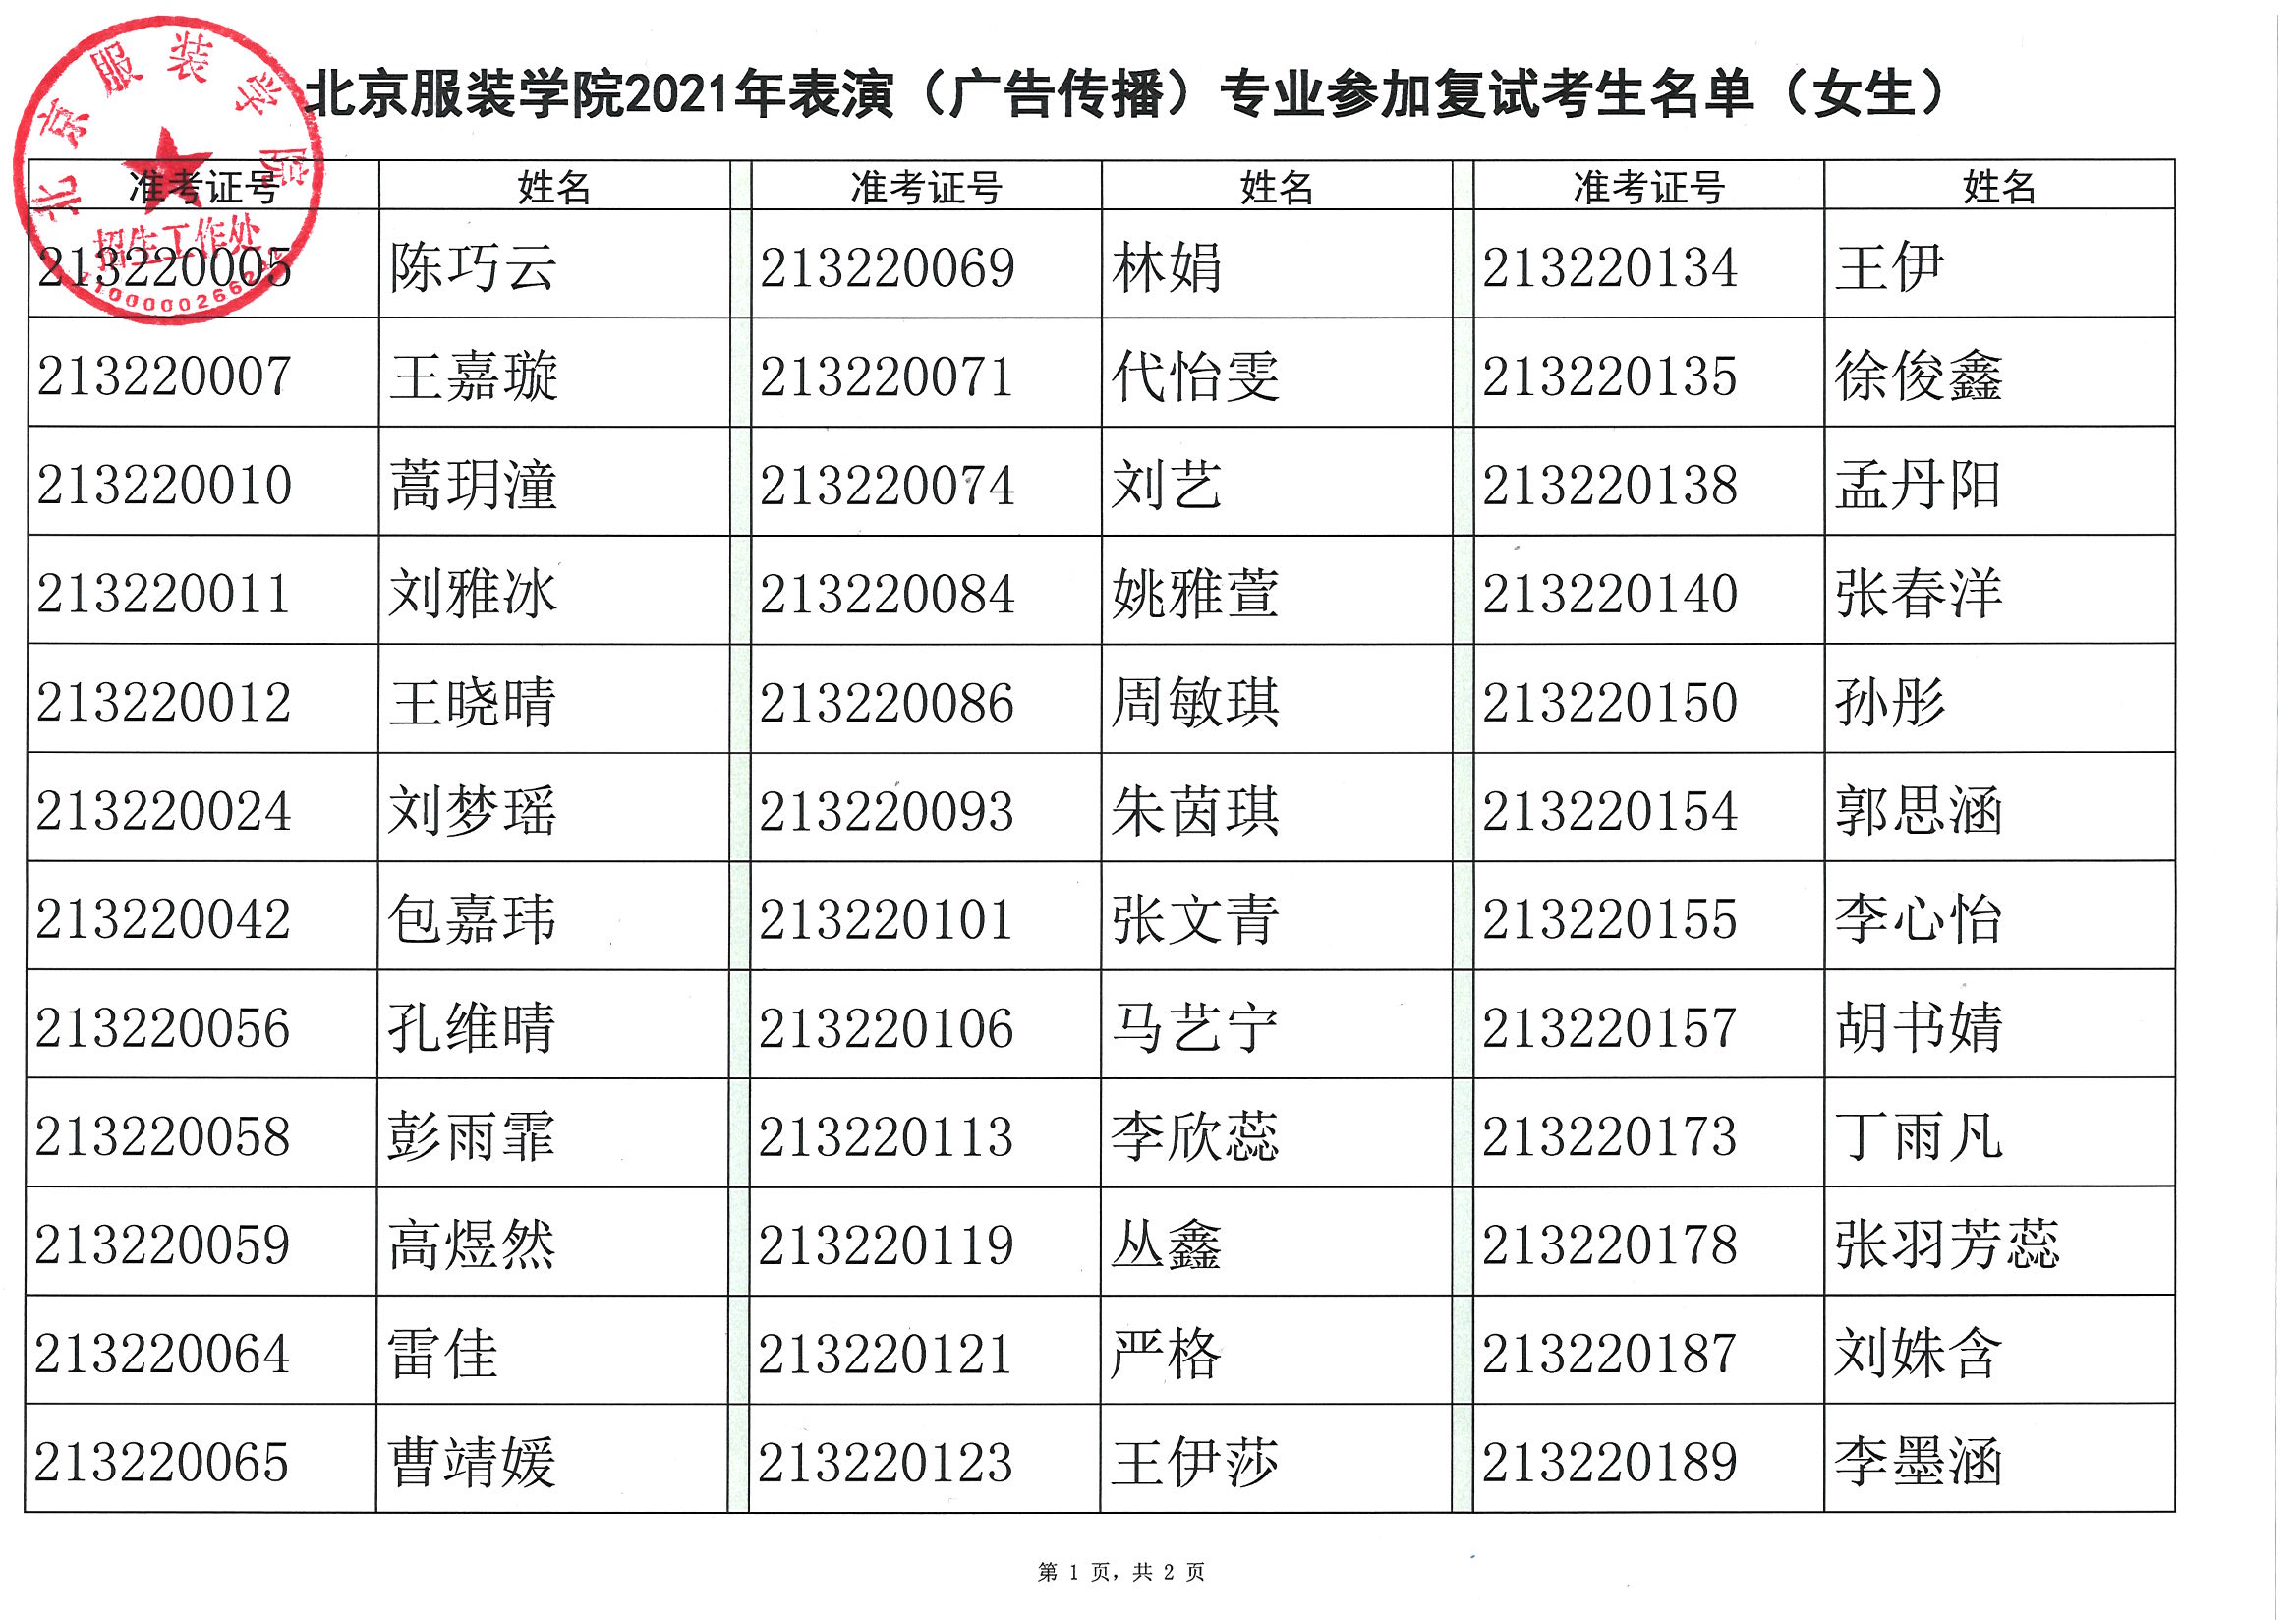 北京服装学院表演专业考试参加复试考生名单及复试安排